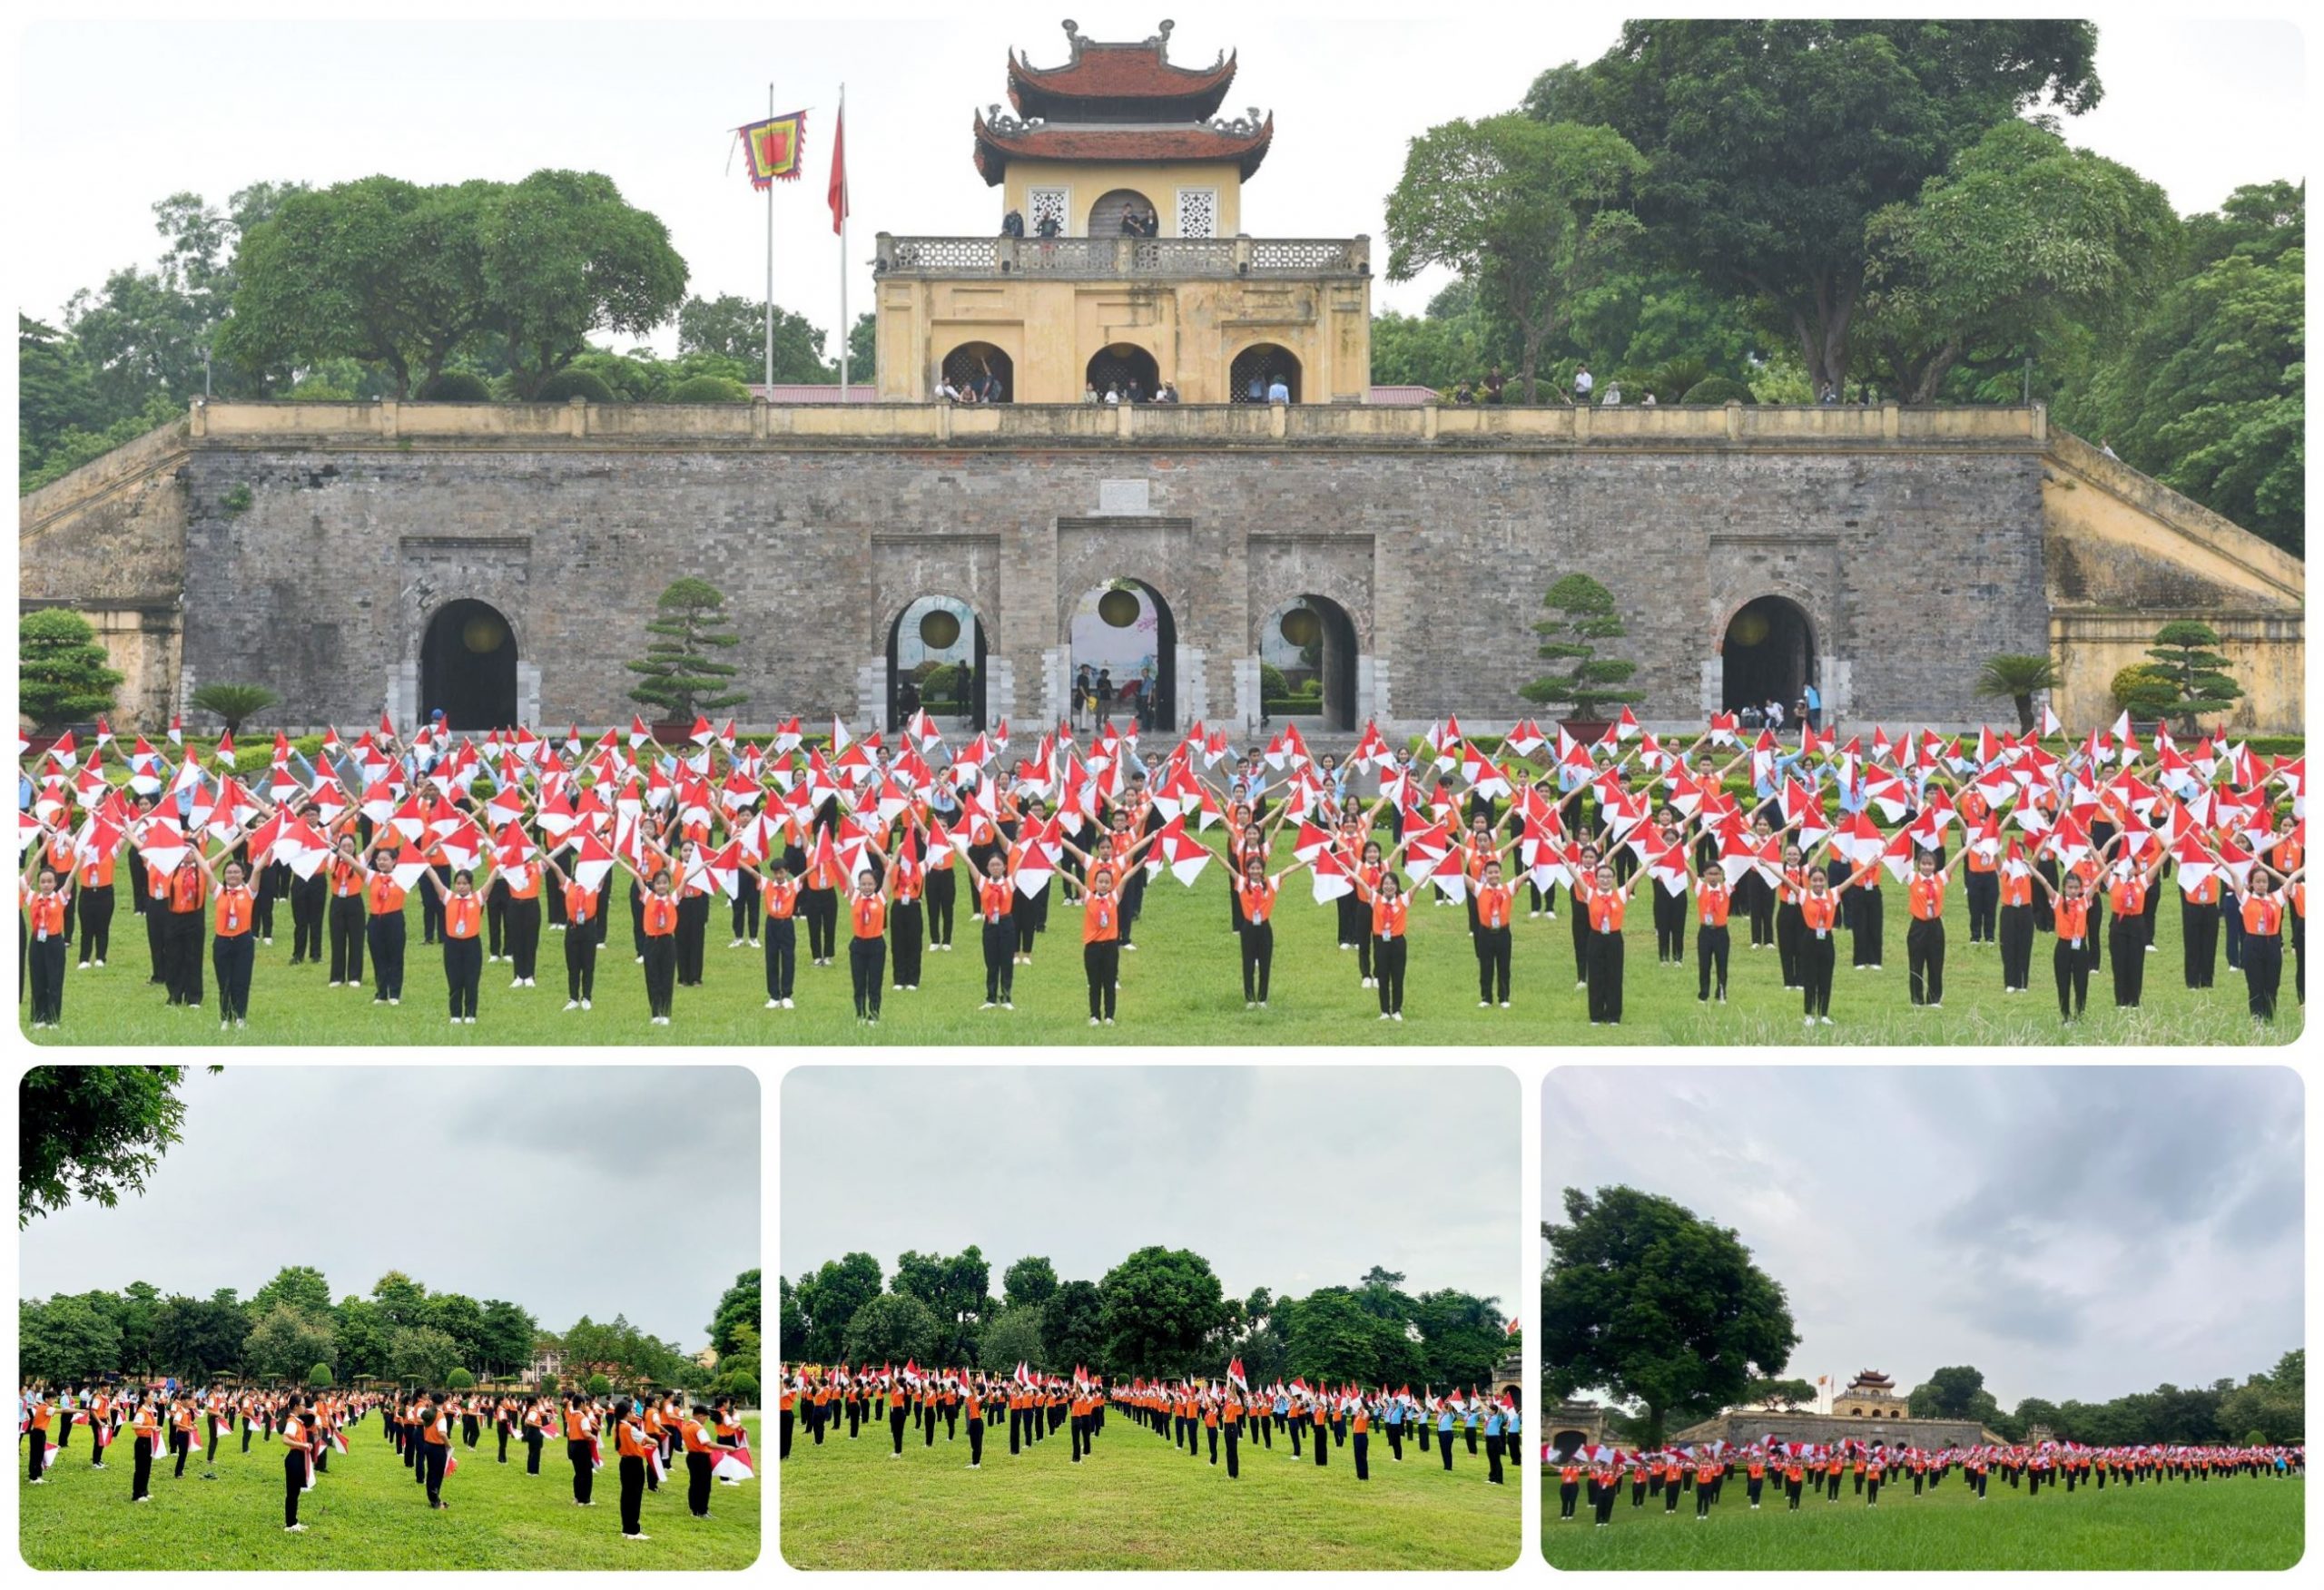 Màn đồng diễn được thực hiện tại Khu di tích Hoàng Thành Thăng Long, trên nền nhạc bài hát “Nụ cười hồng” với thông điệp “Chỉ huy Đội giỏi 2023” diễn ra đẹp mắt và ấn tượng. (Ảnh: VietKings)